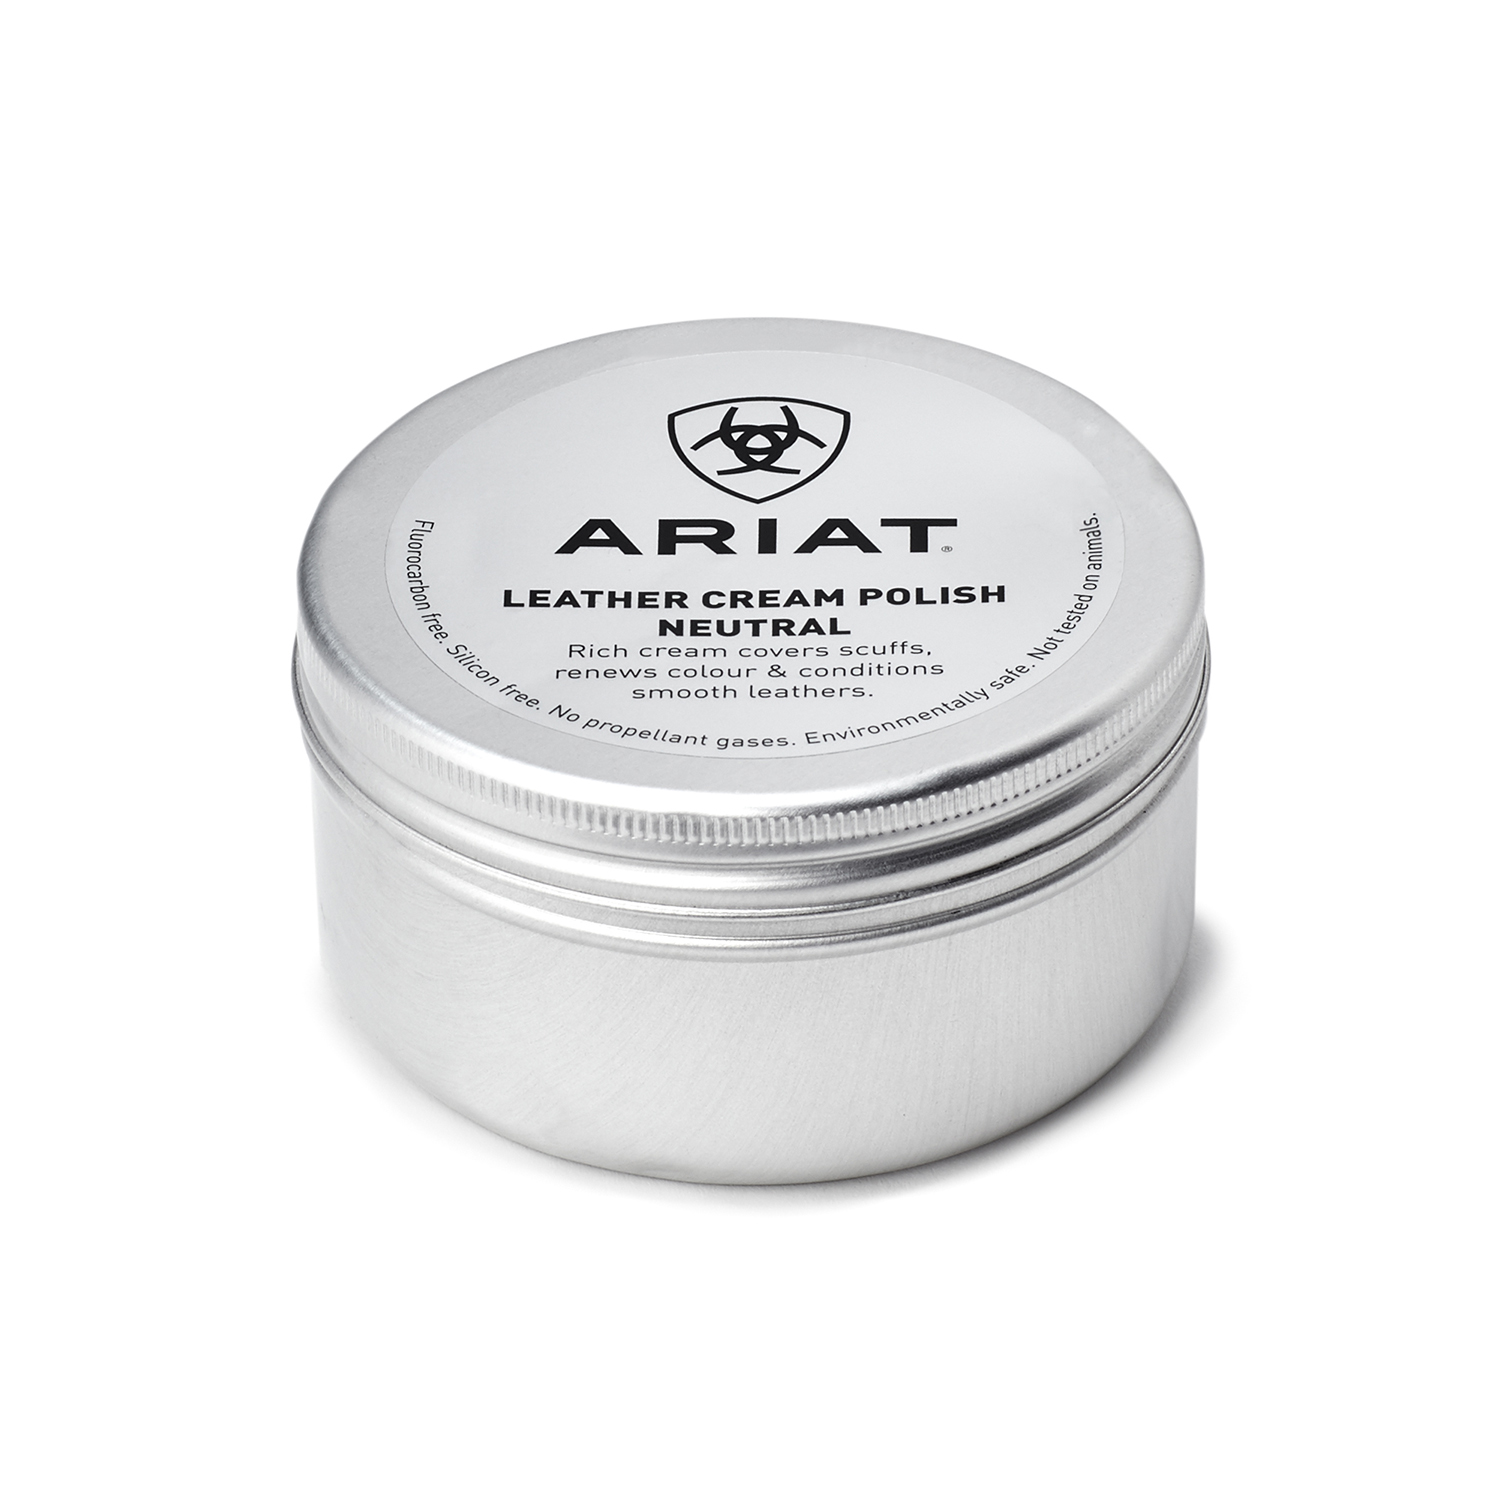 Ariat leather cream neutral